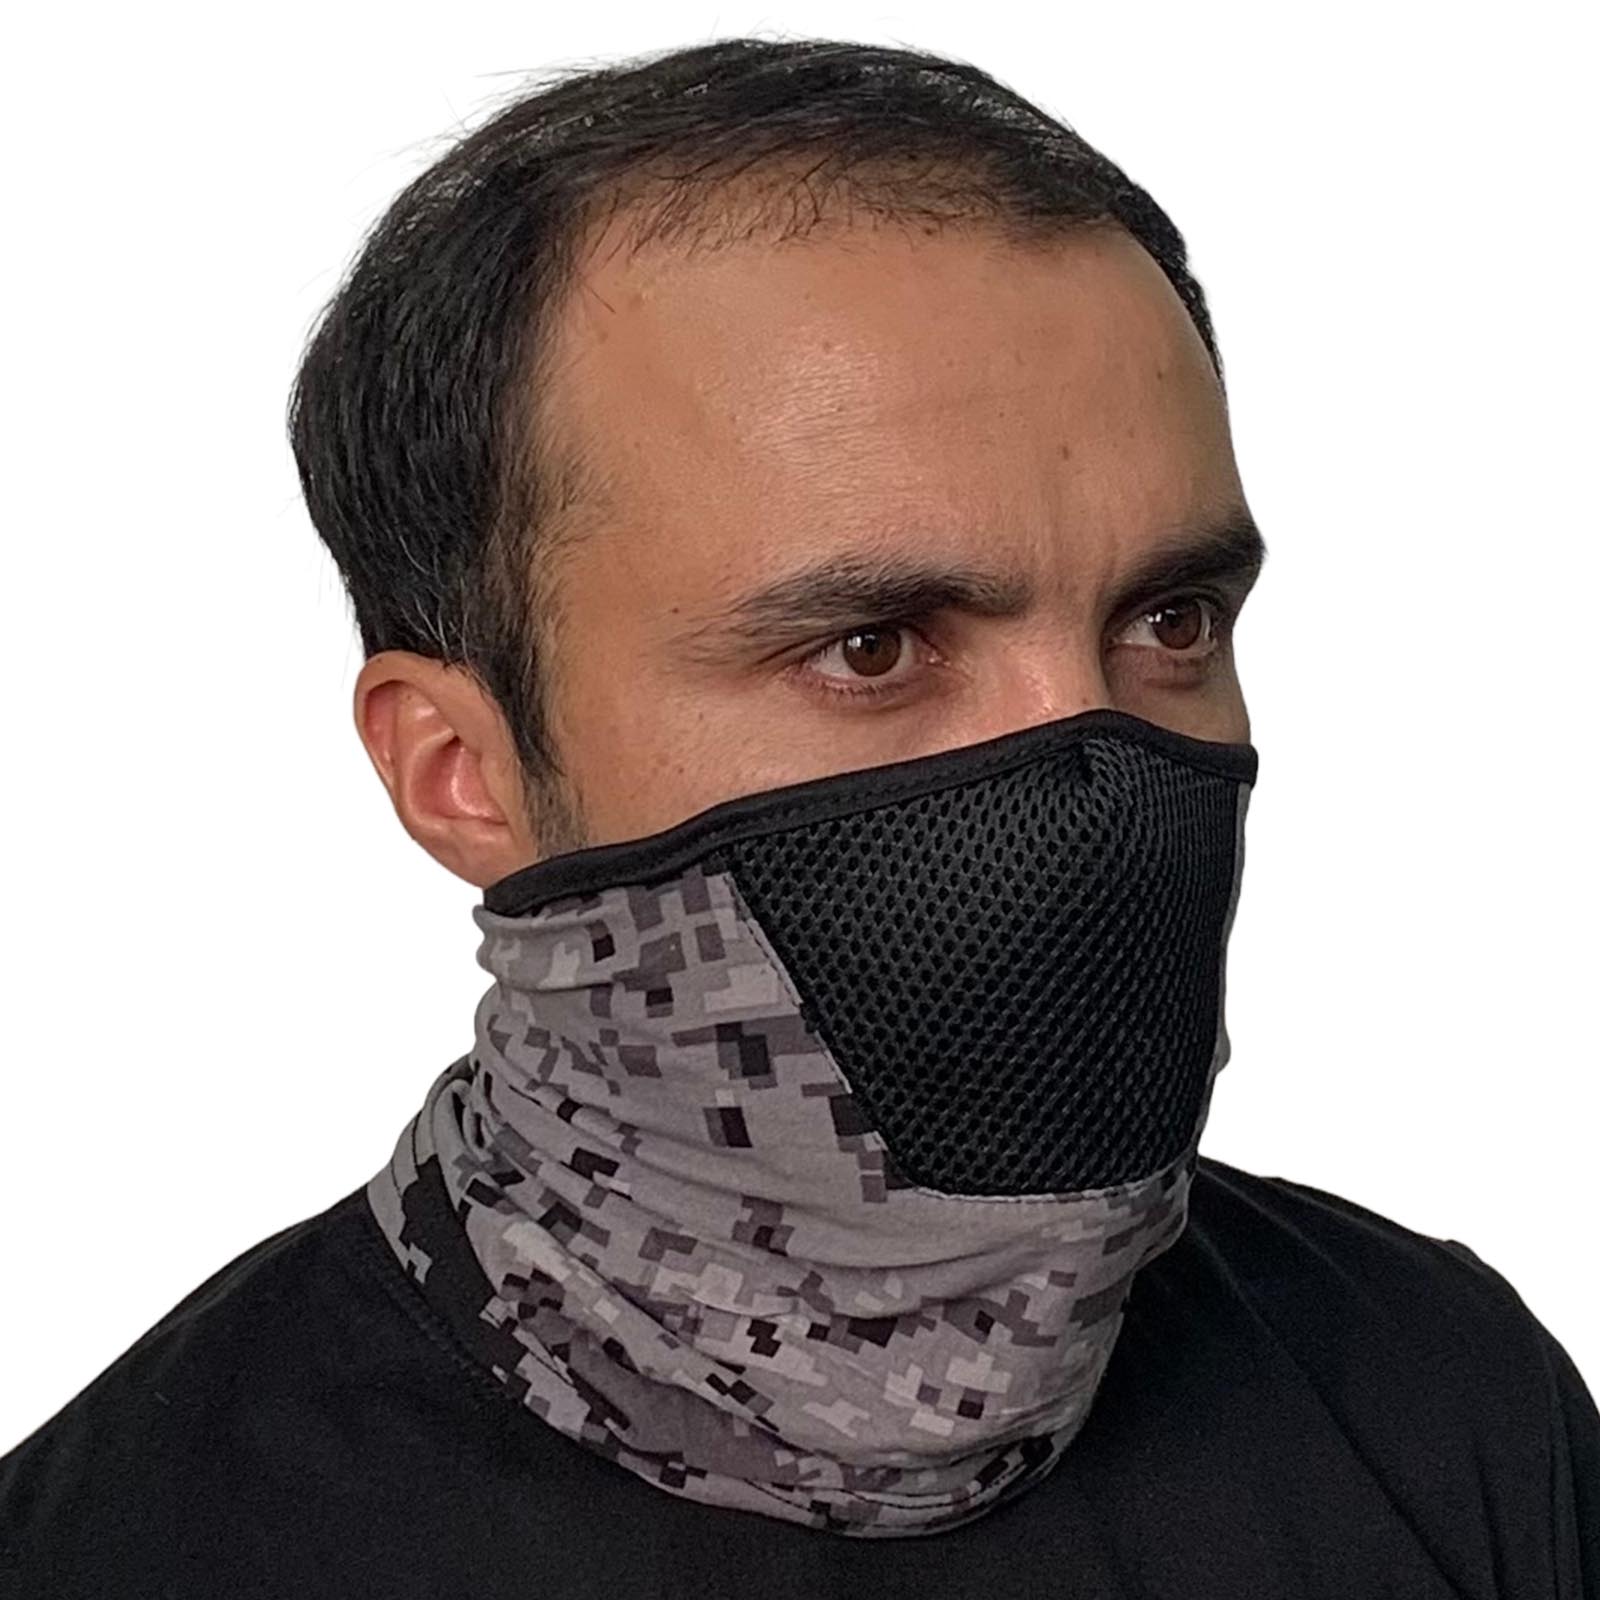 Купить маску-бандану по низкой цене в интернет-магазине Военпро